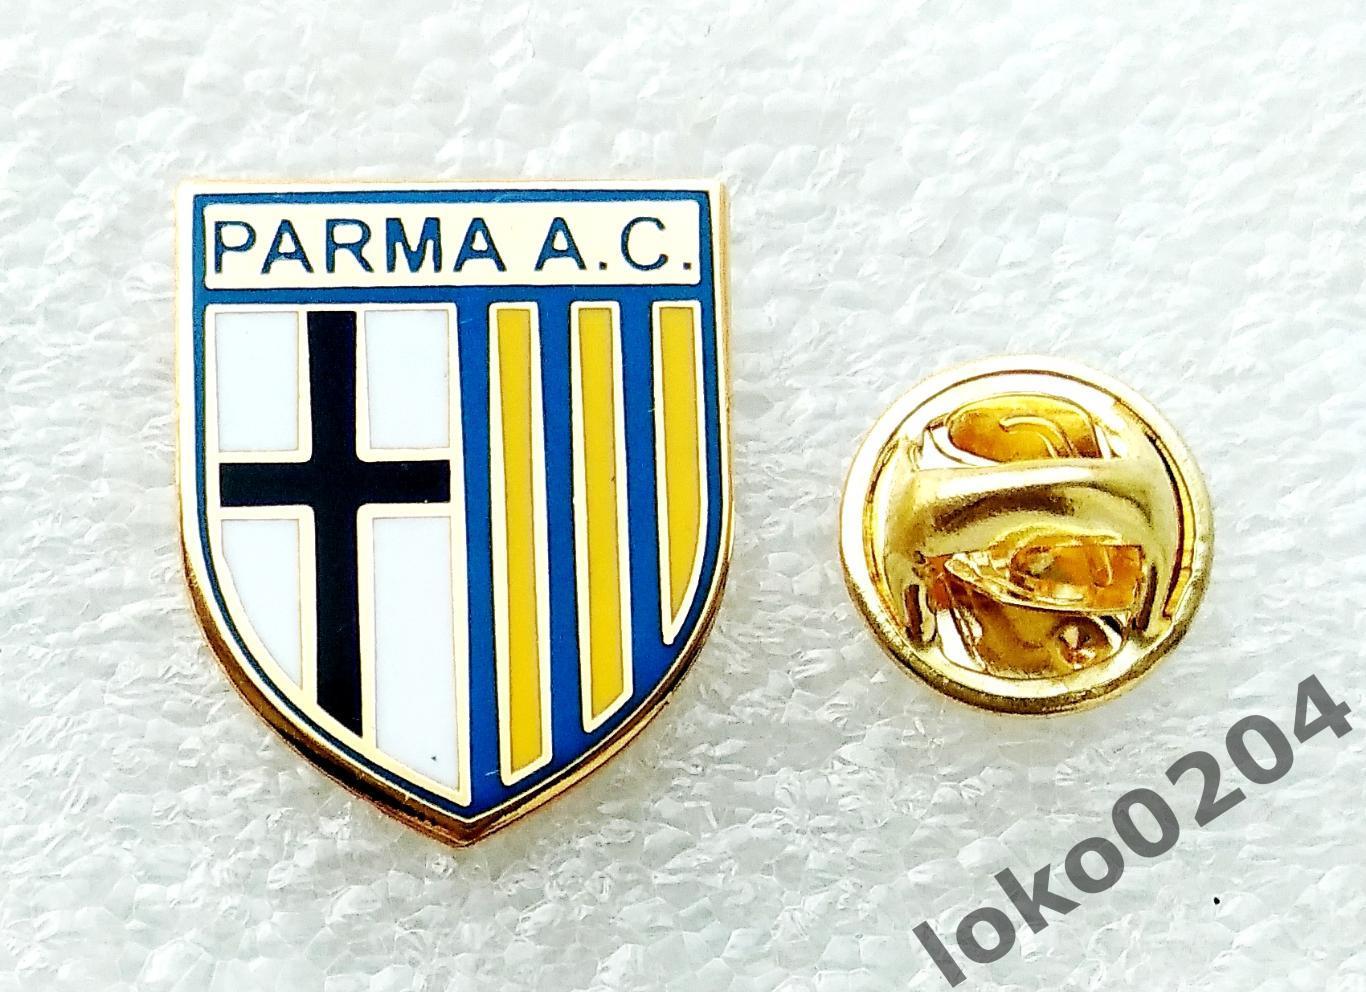 Парма ФК - Parma AC - ИТАЛИЯ .